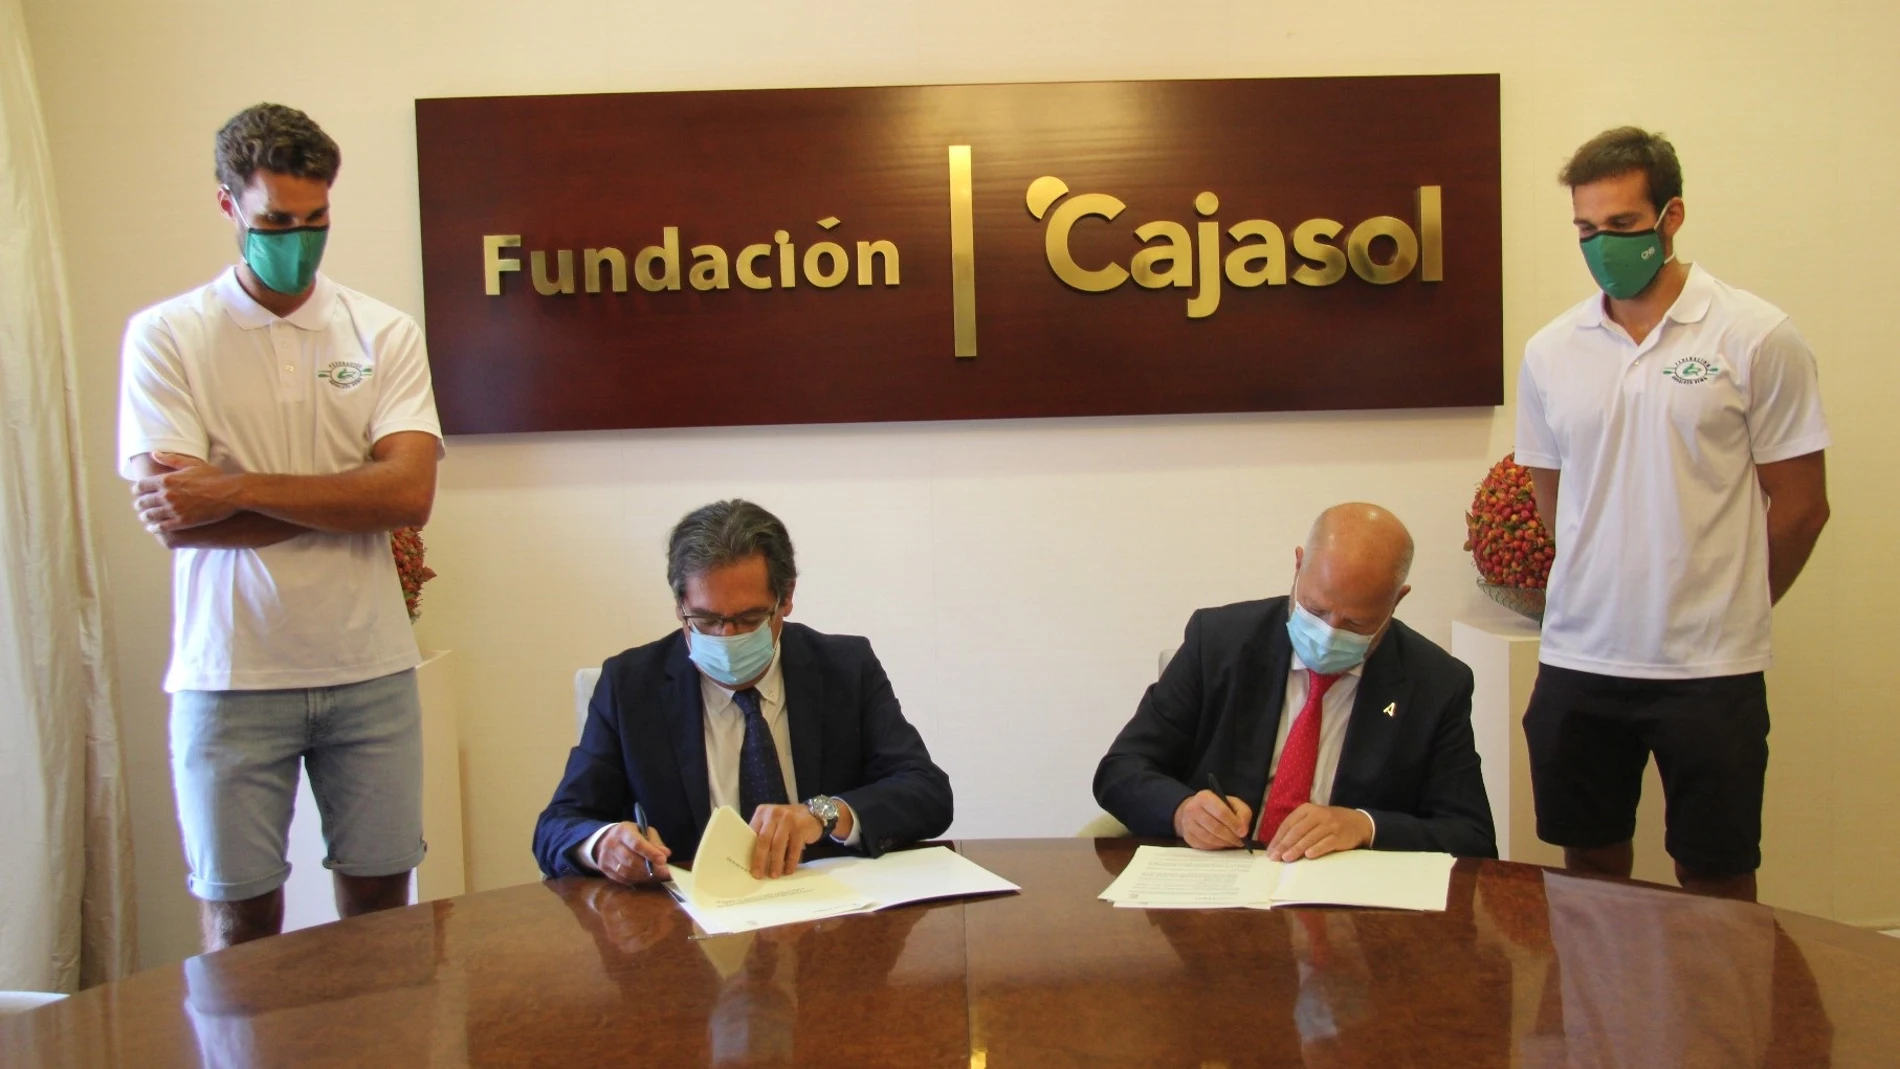 Educación.-Cajasol.-Fundación Andalucía Olímpica y Fundación Cajasol acuerdan colaborar en plan olímpico andaluz 2020-21